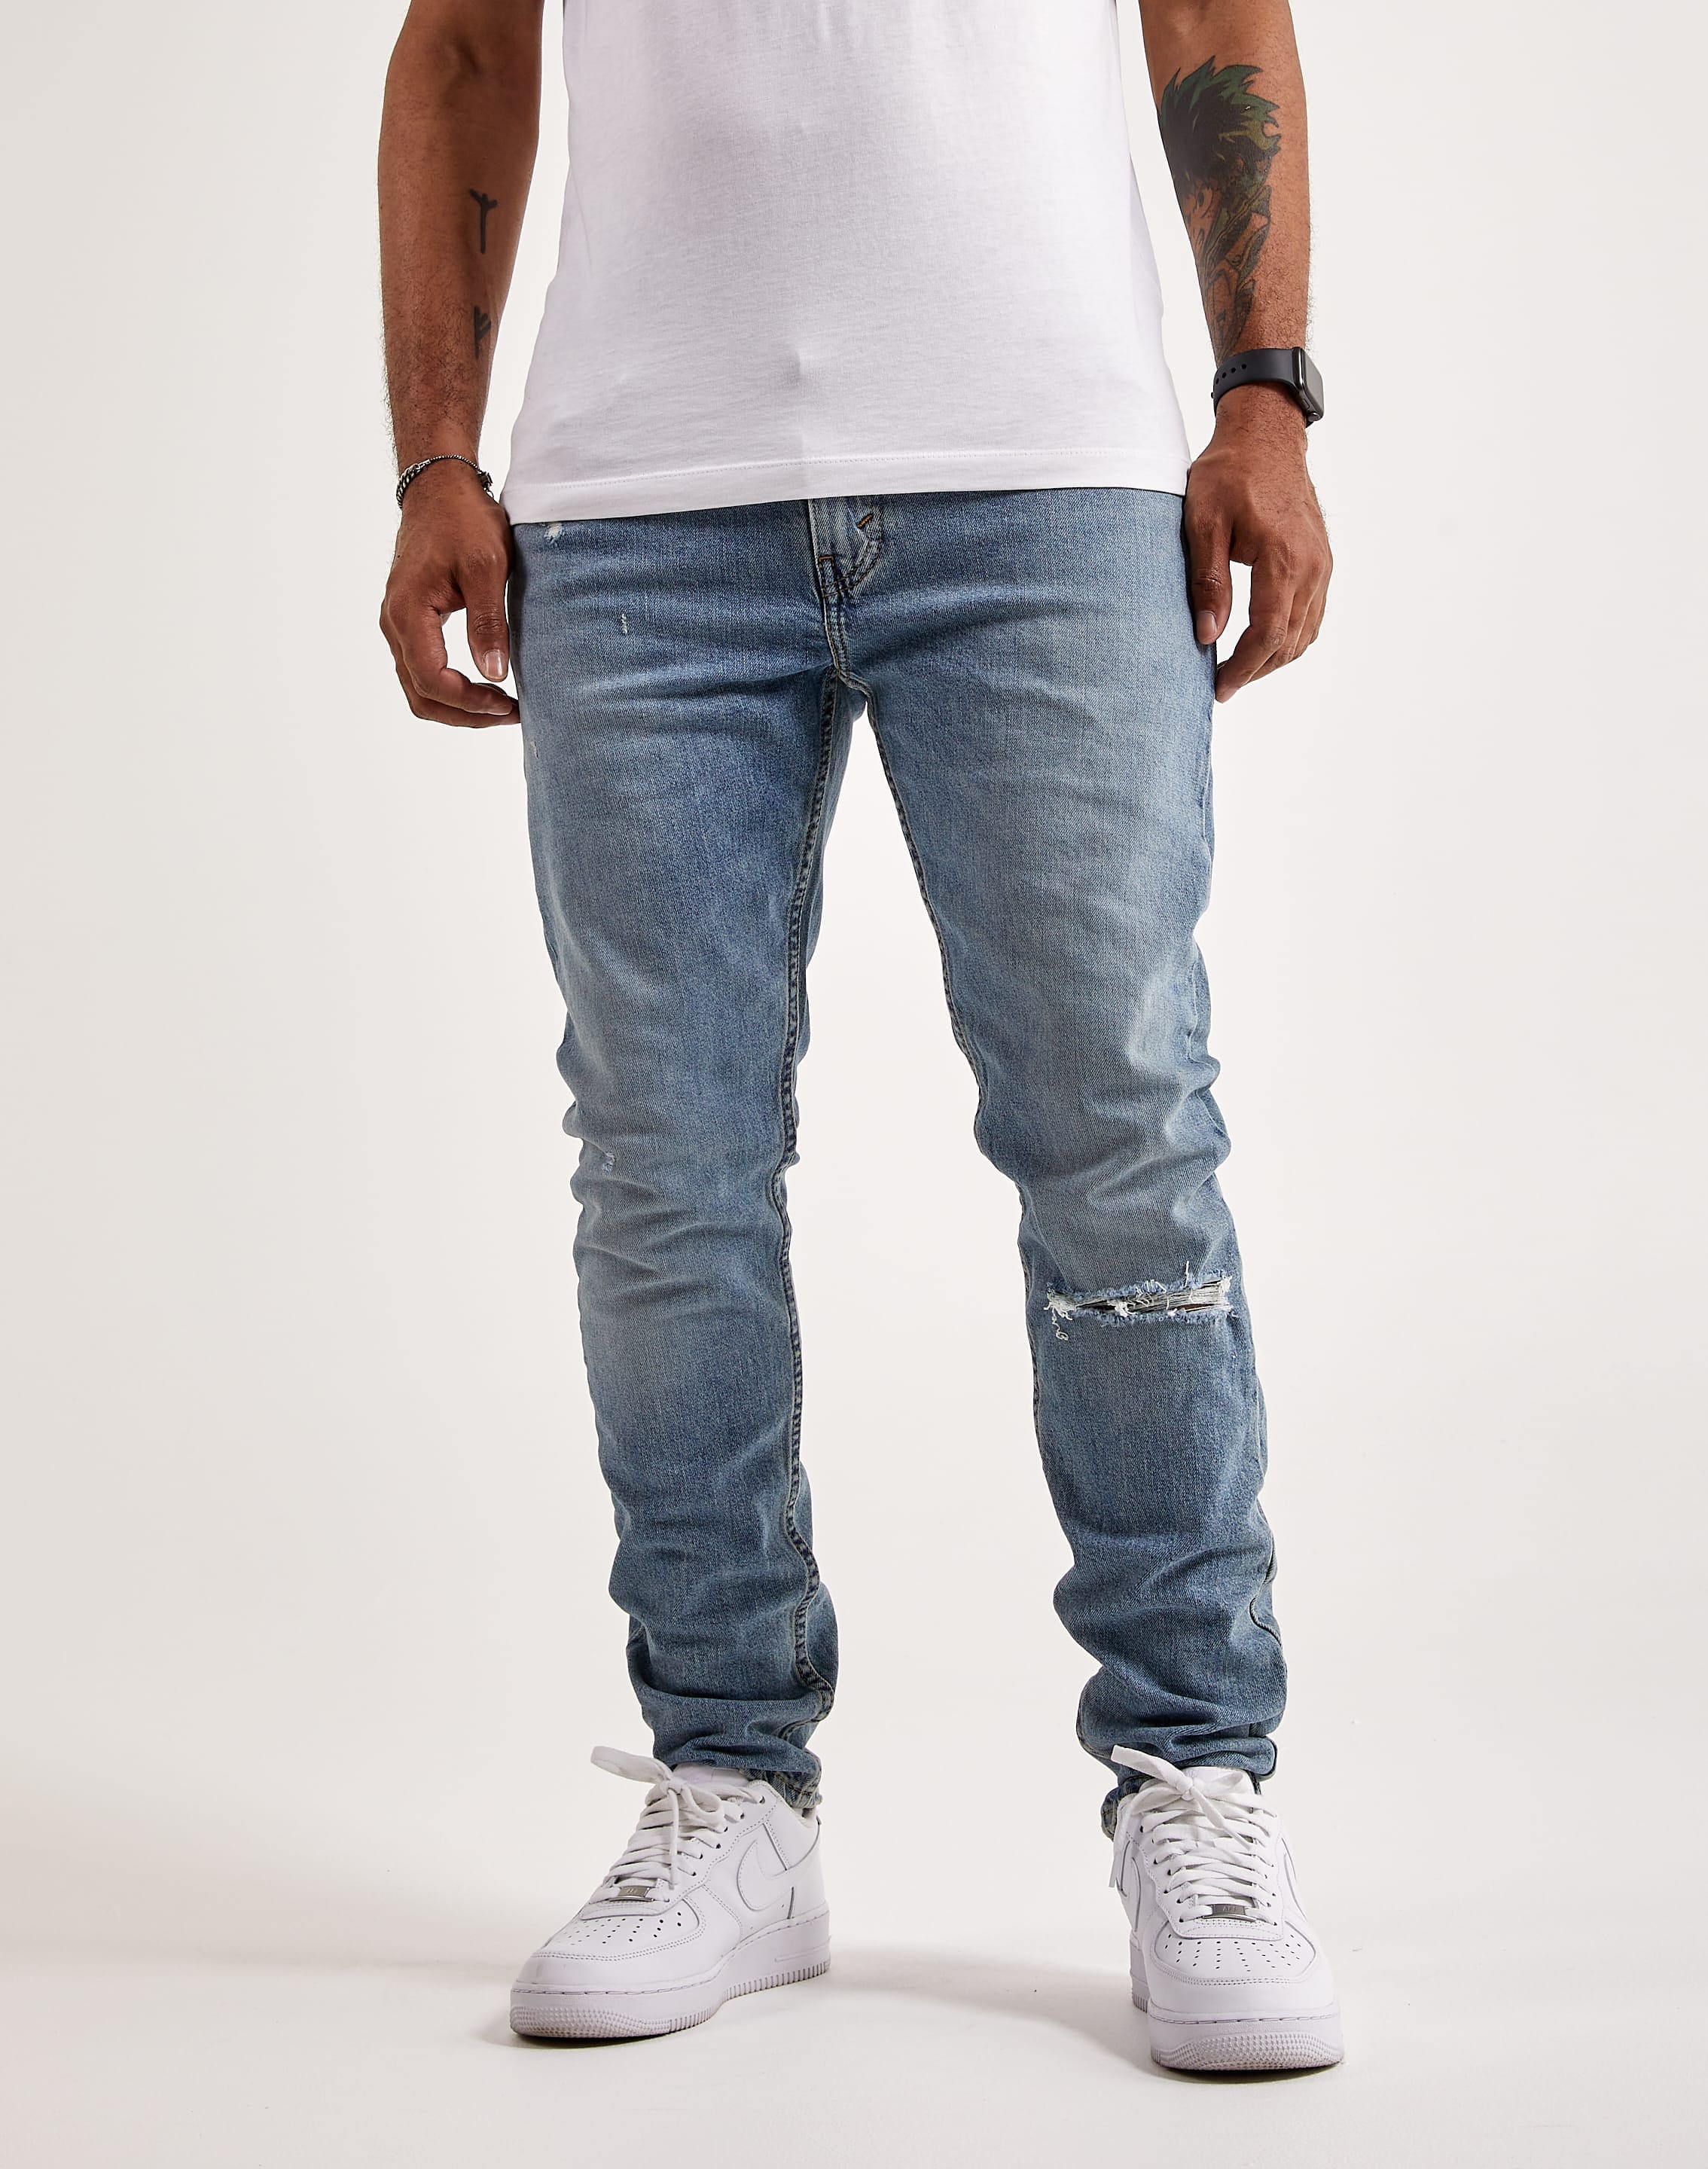 Levi 512 Slim Taper Jeans – DTLR